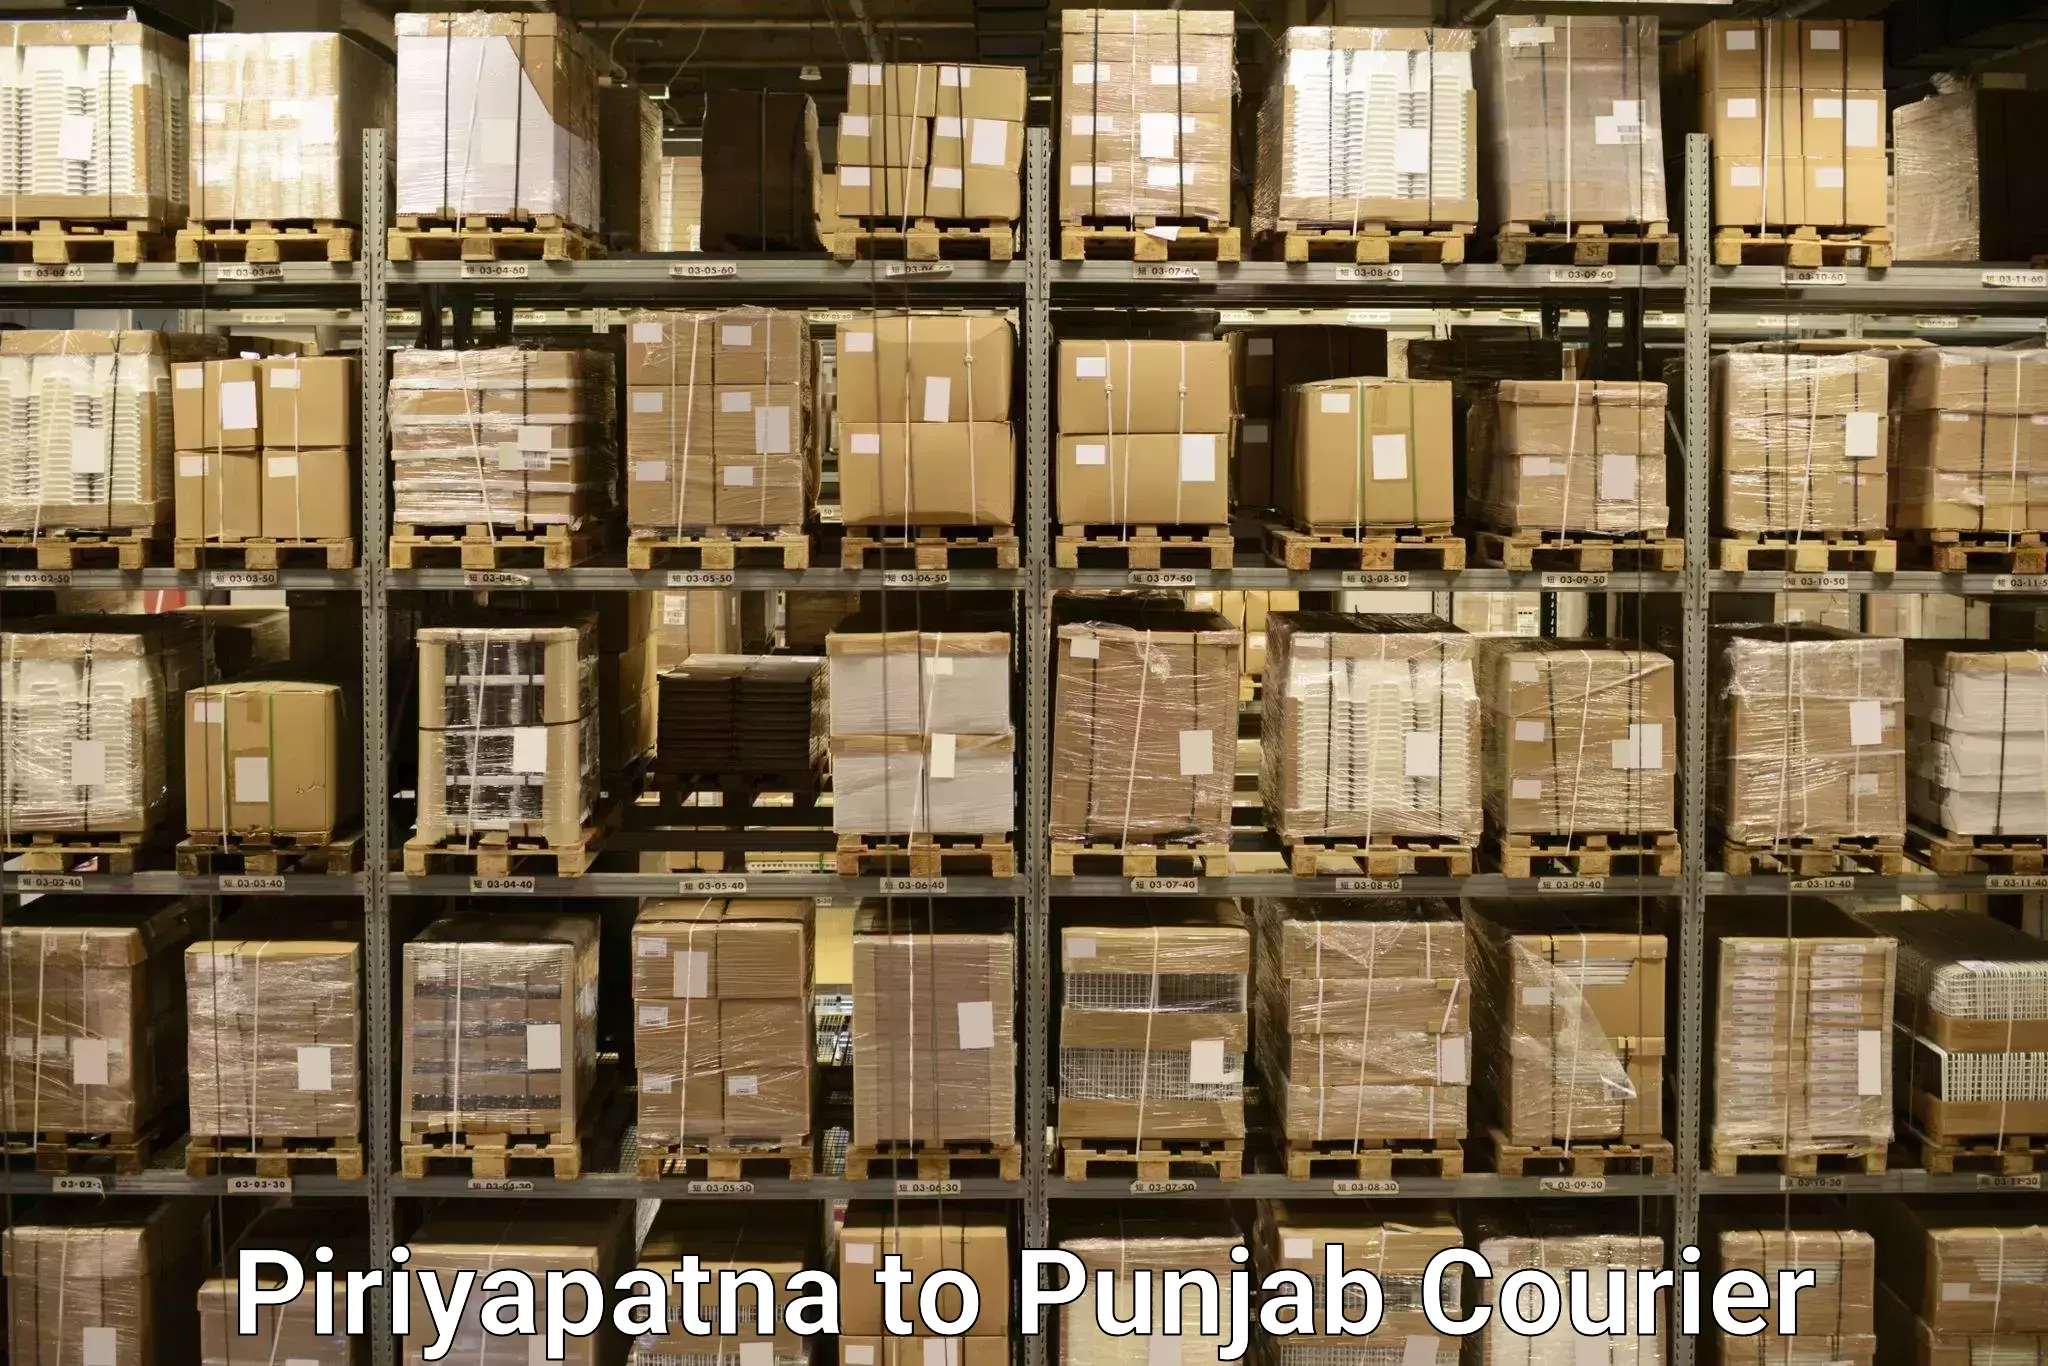 Baggage transport updates Piriyapatna to Rajpura